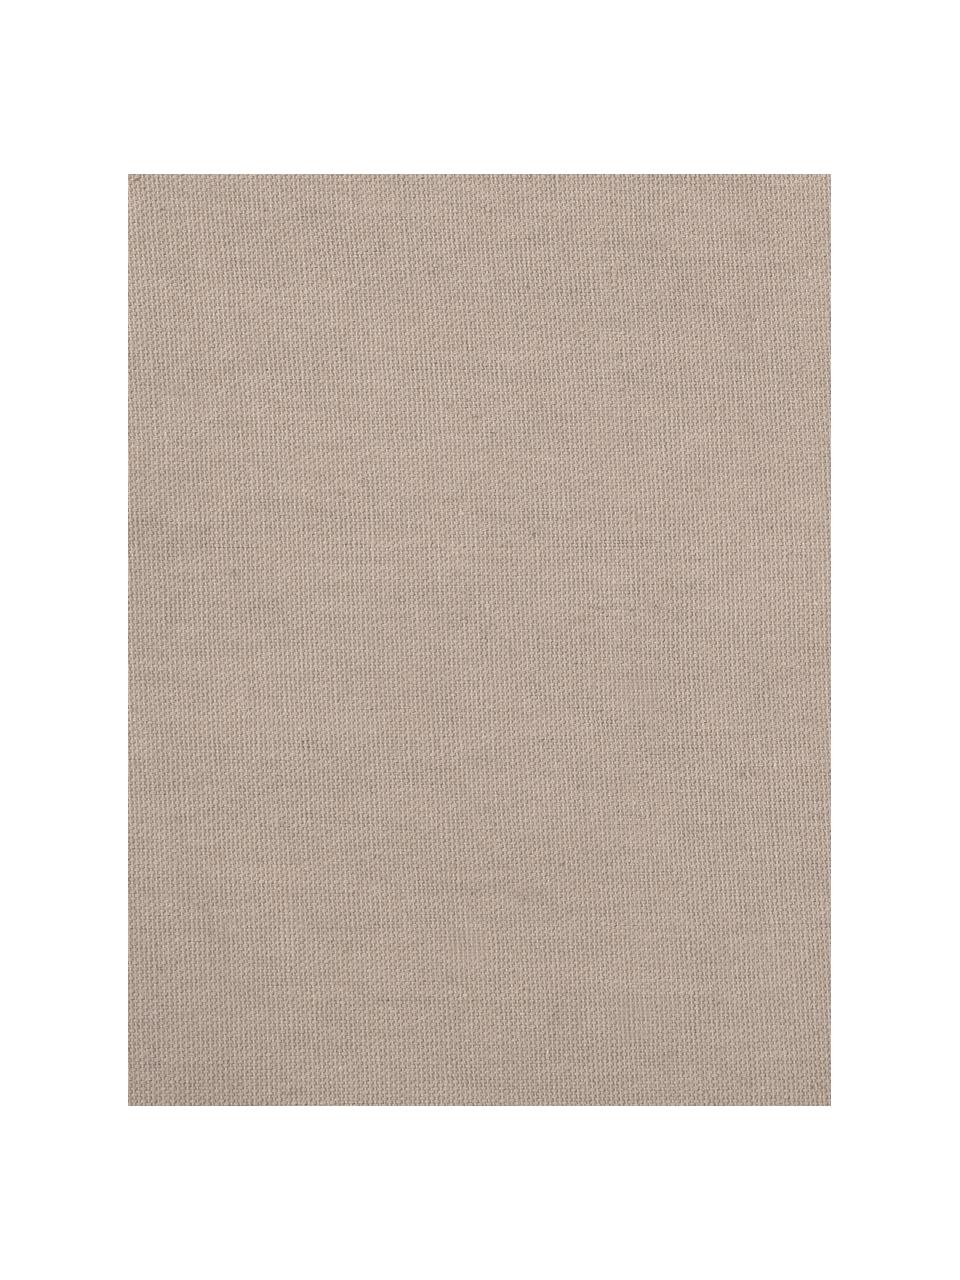 Federa arredo in juta/cotone misto Diajute, Retro: cotone, Fronte: beige, bianco crema Retro: beige chiaro, Larg. 45 x Lung. 45 cm